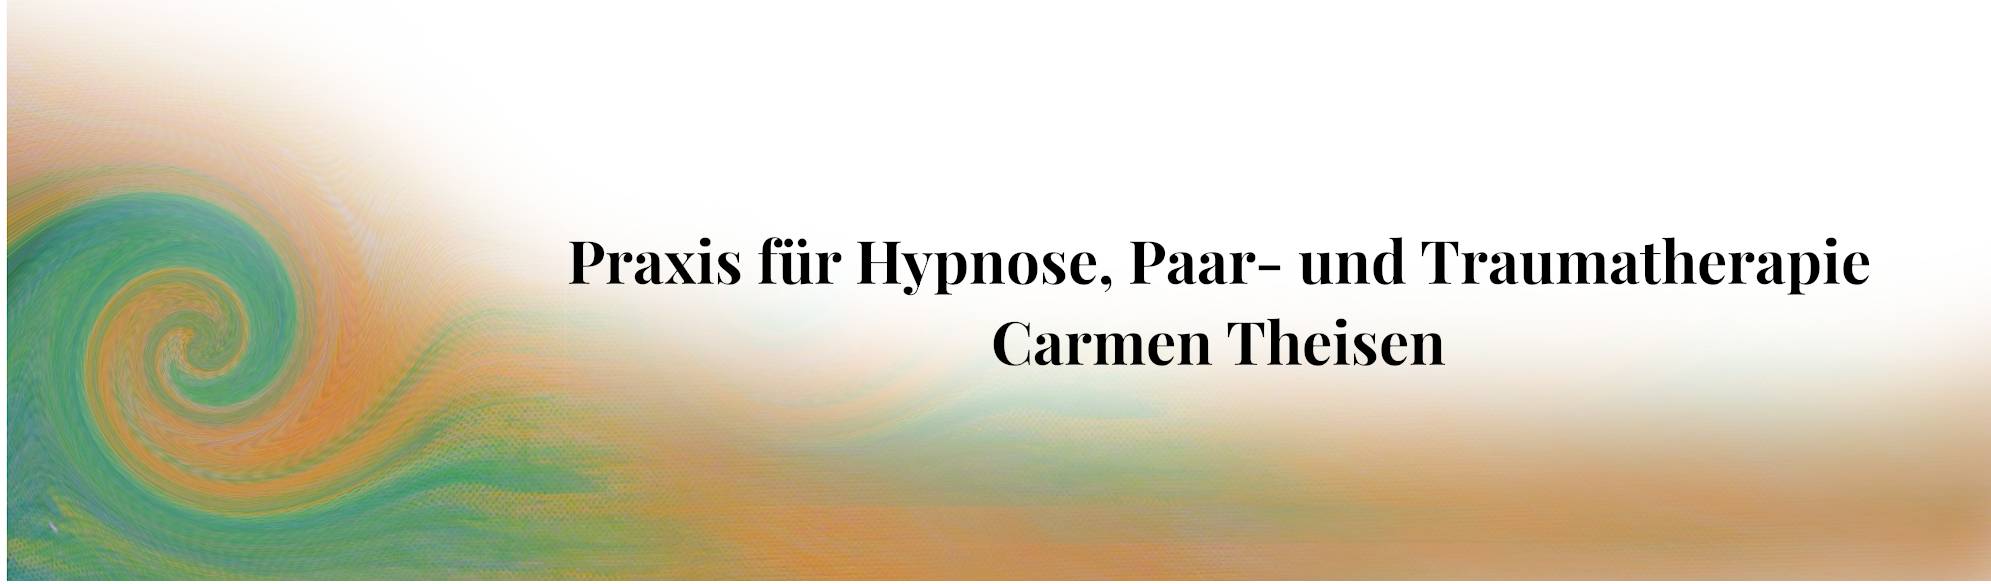 Praxis für Hypnose, Paar- und Traumatherapie